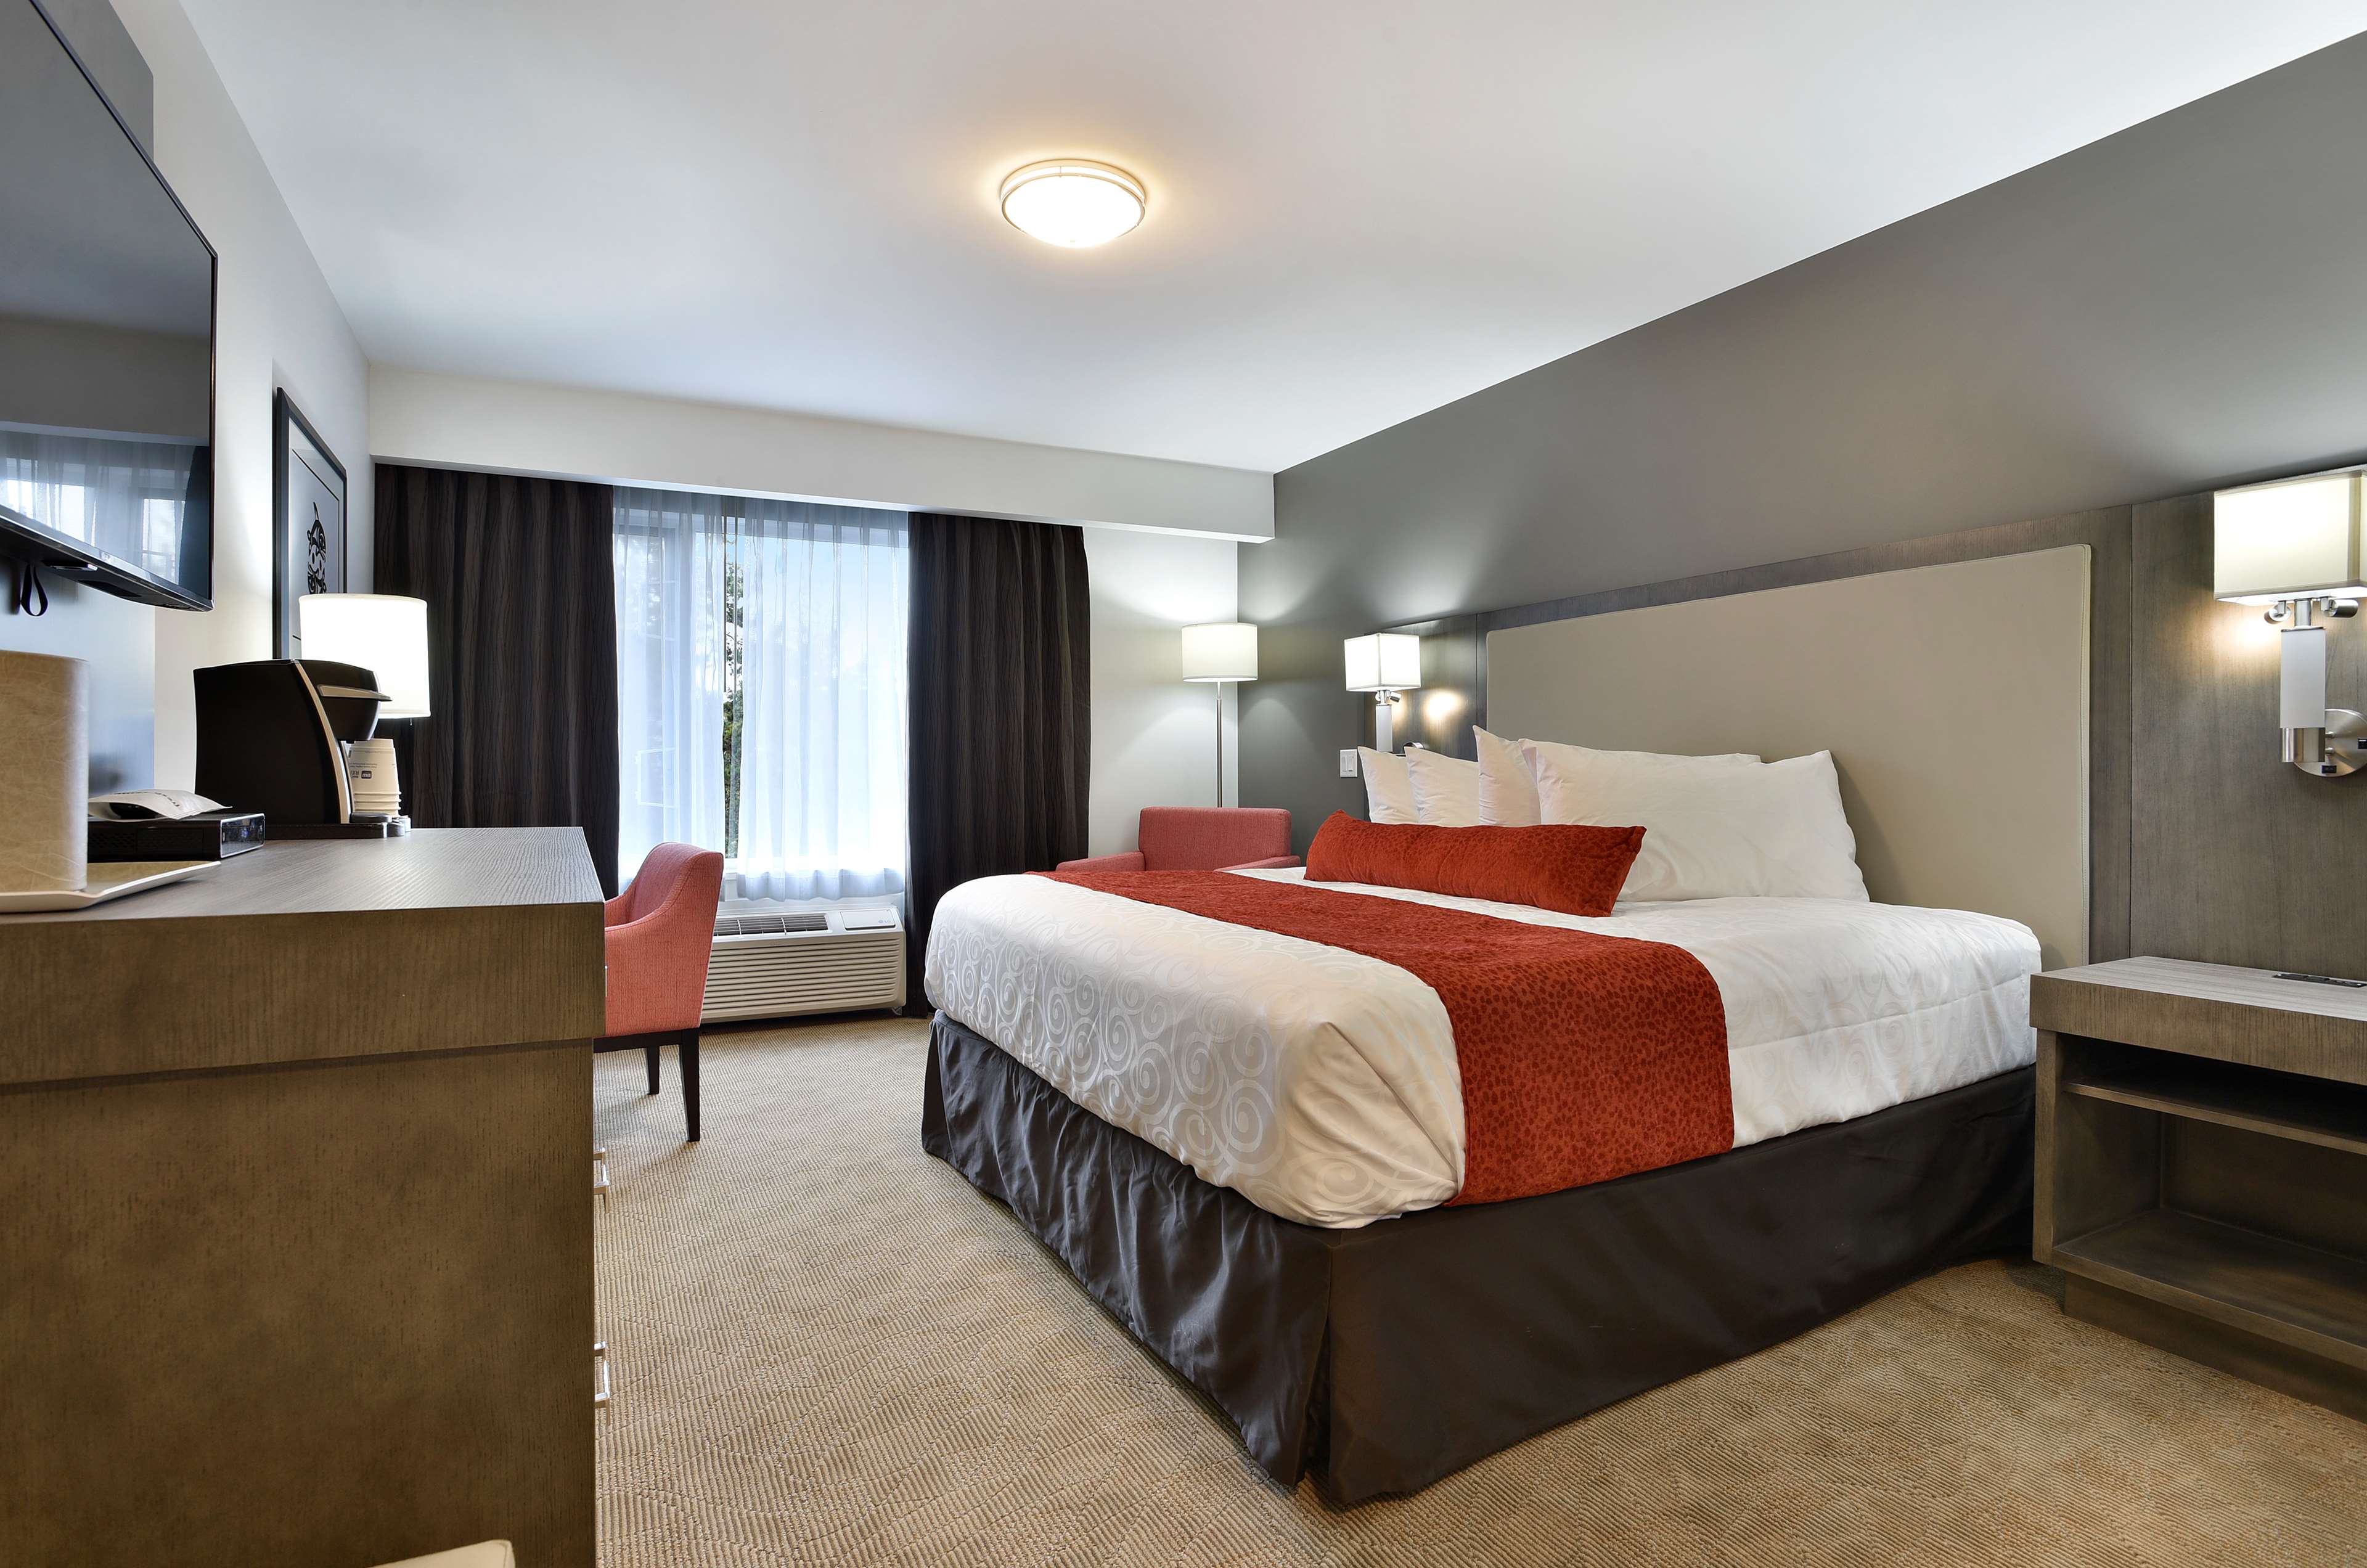 Best Western Cowichan Valley Inn in Duncan: King Bed Room